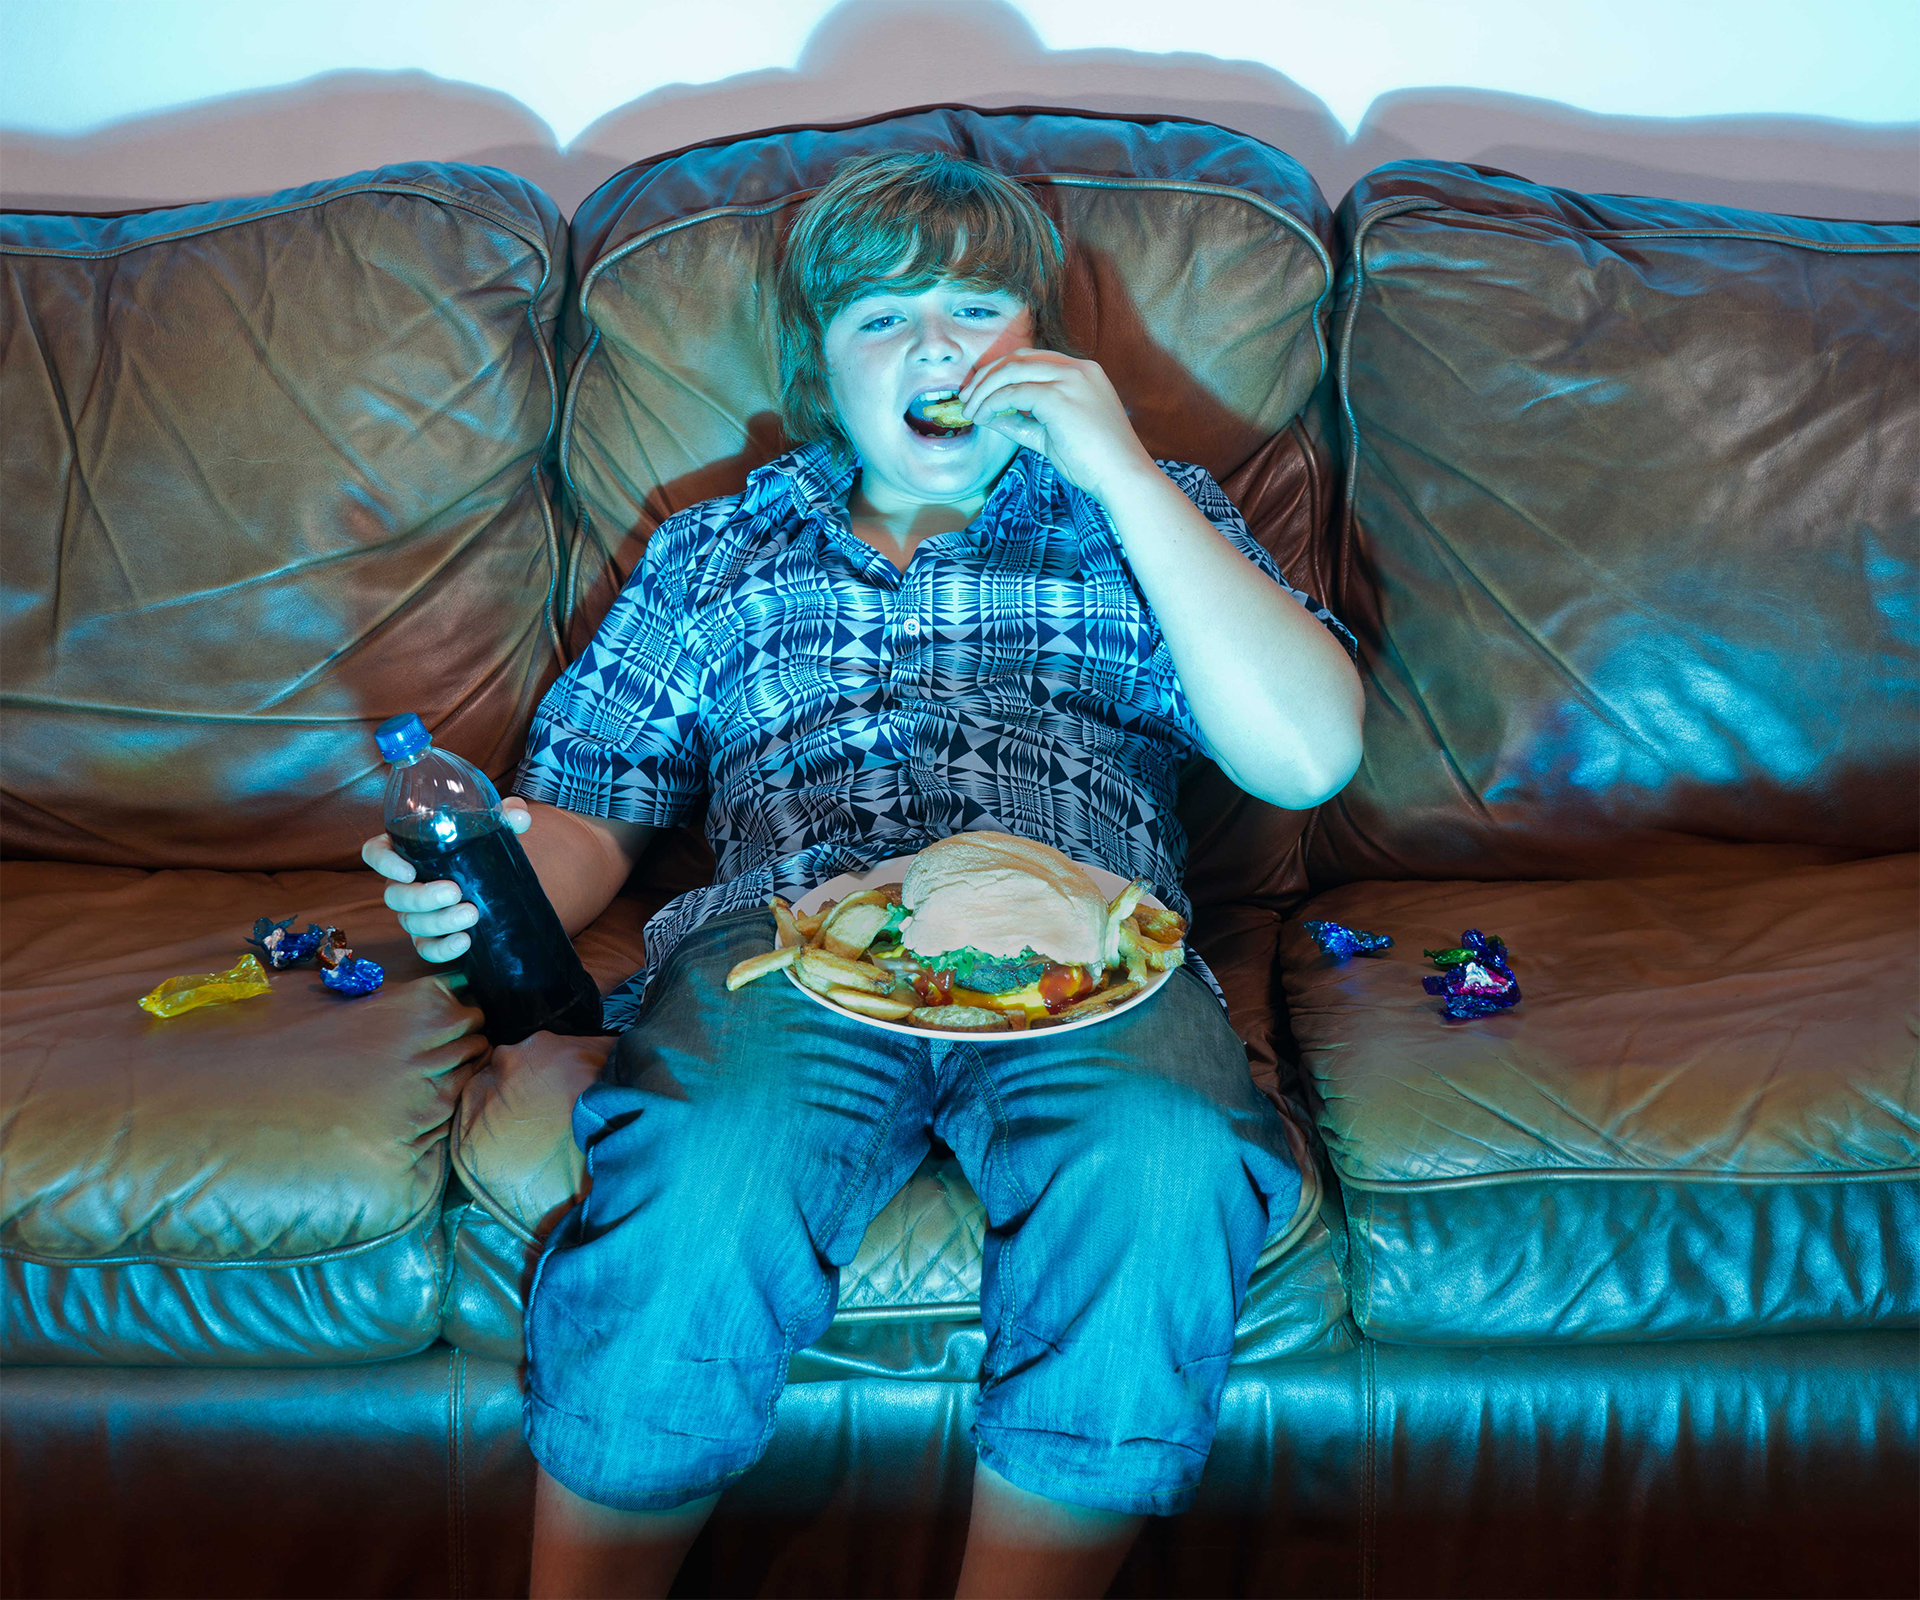 Boy eats food on lounge, stock image 